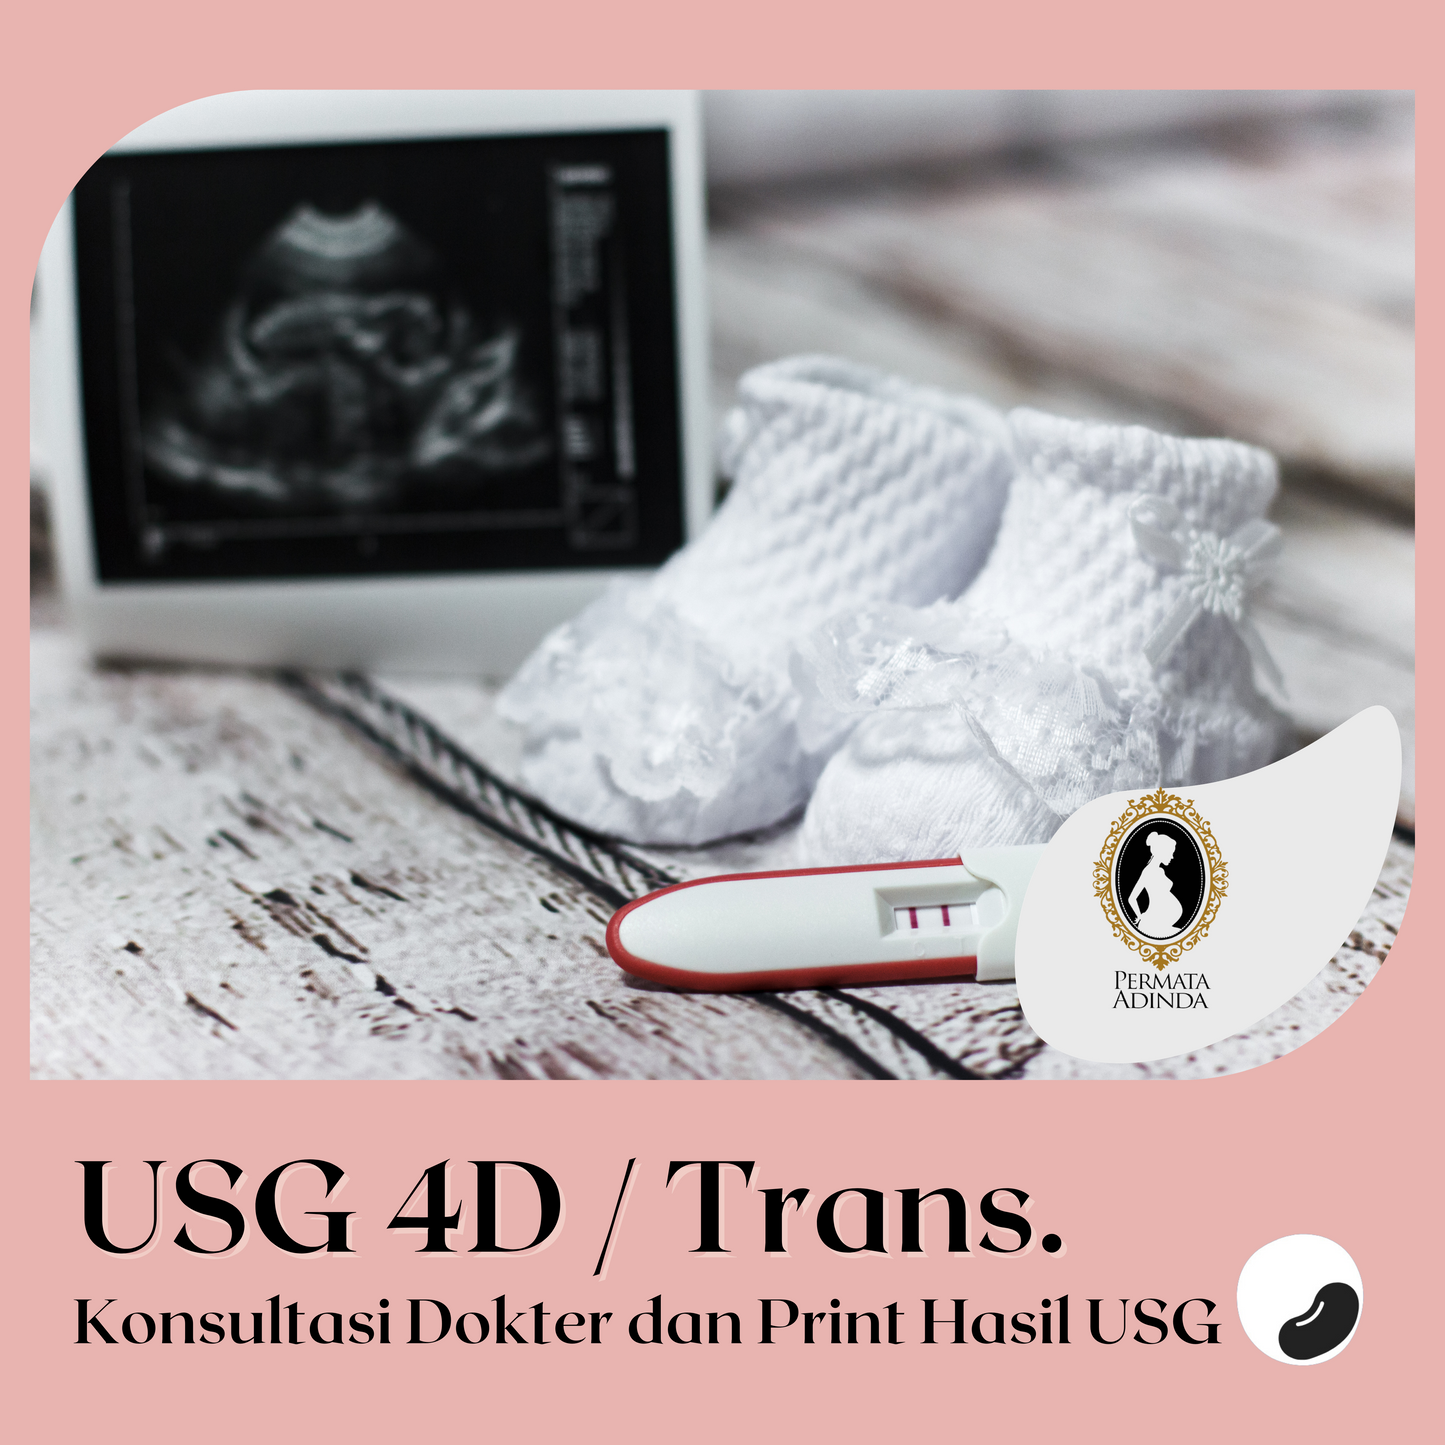 Ultrasound 4D / Transvaginal